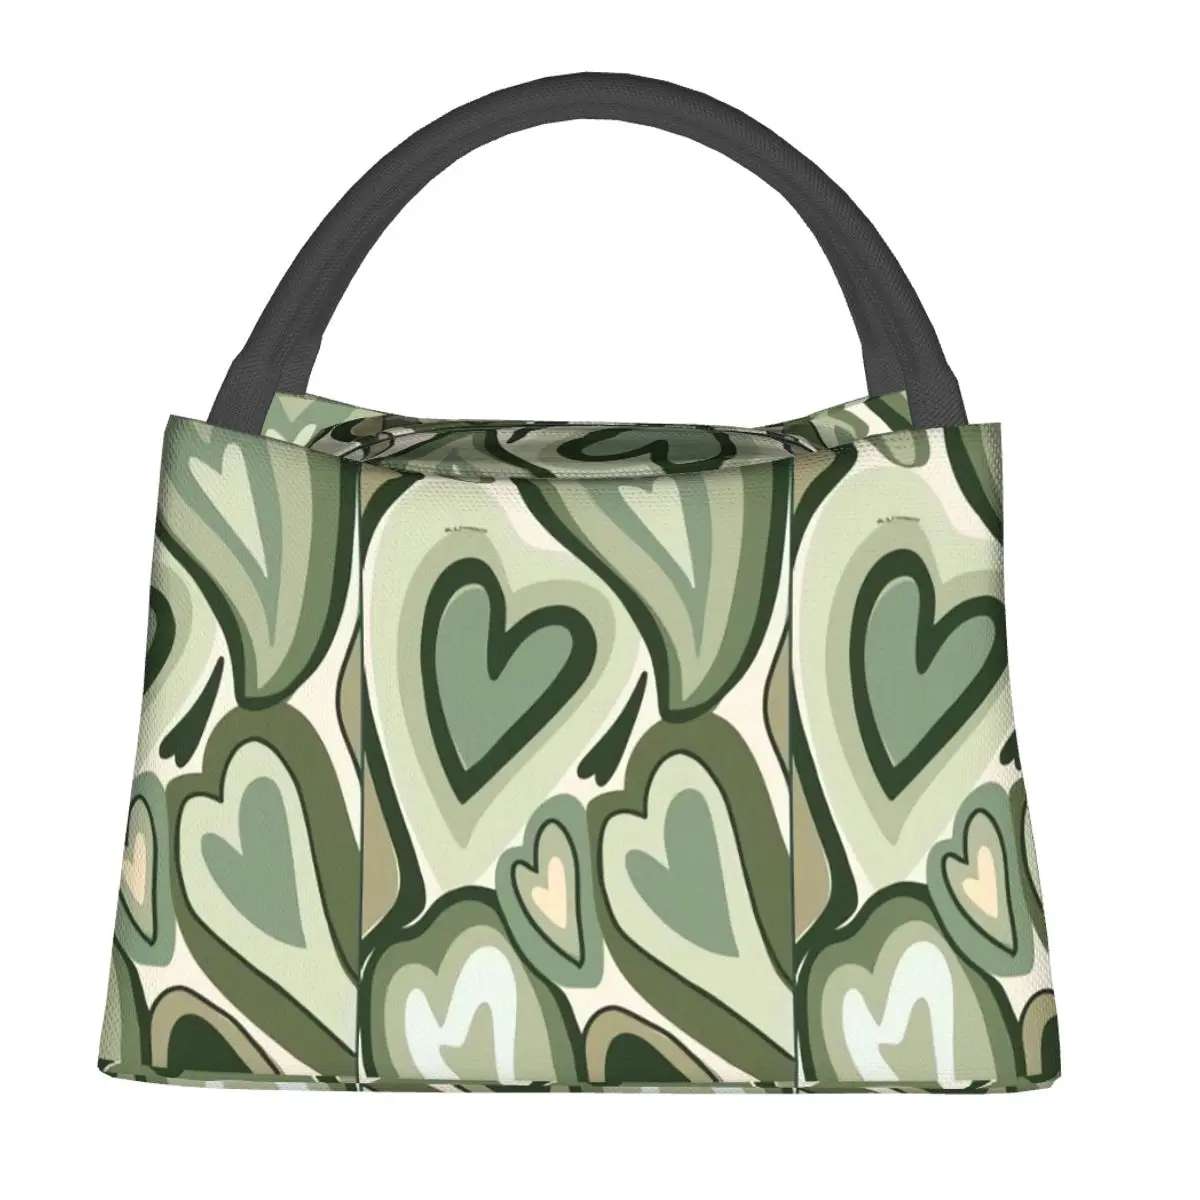 Green Heart Lunch Bag 3d Анимация Открытый Ланч-Бокс Для Пикника На Открытом Воздухе Для Ребенка, Модные Дизайнерские Термальные Сумки Для Ланча, Оксфордская Сумка-Холодильник